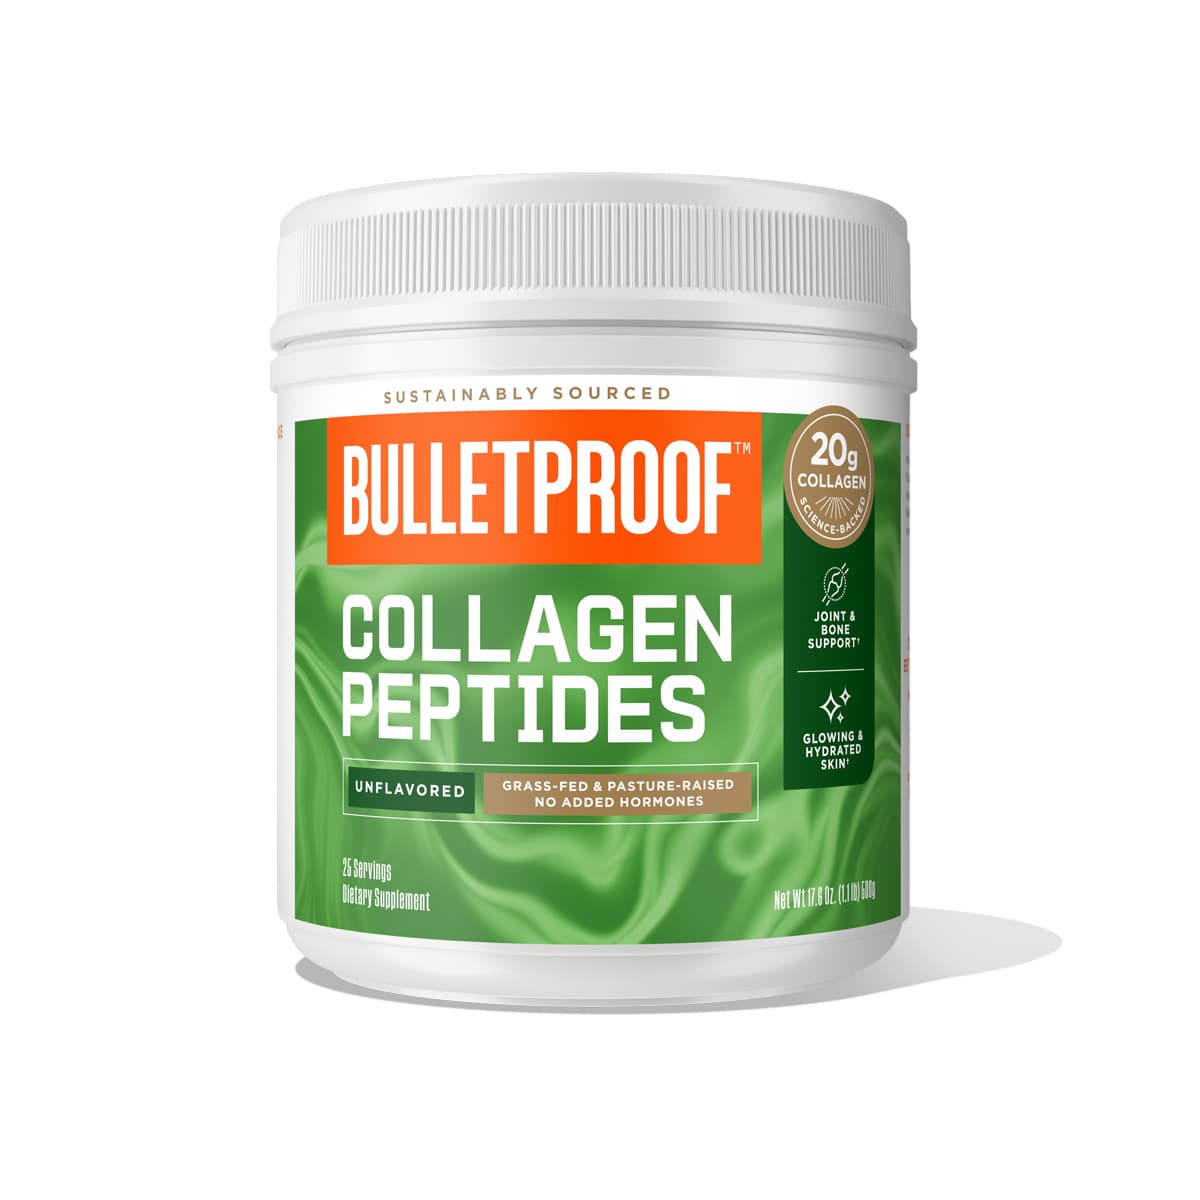 Unflavored Collagen Peptides Powder, Collagen Protein